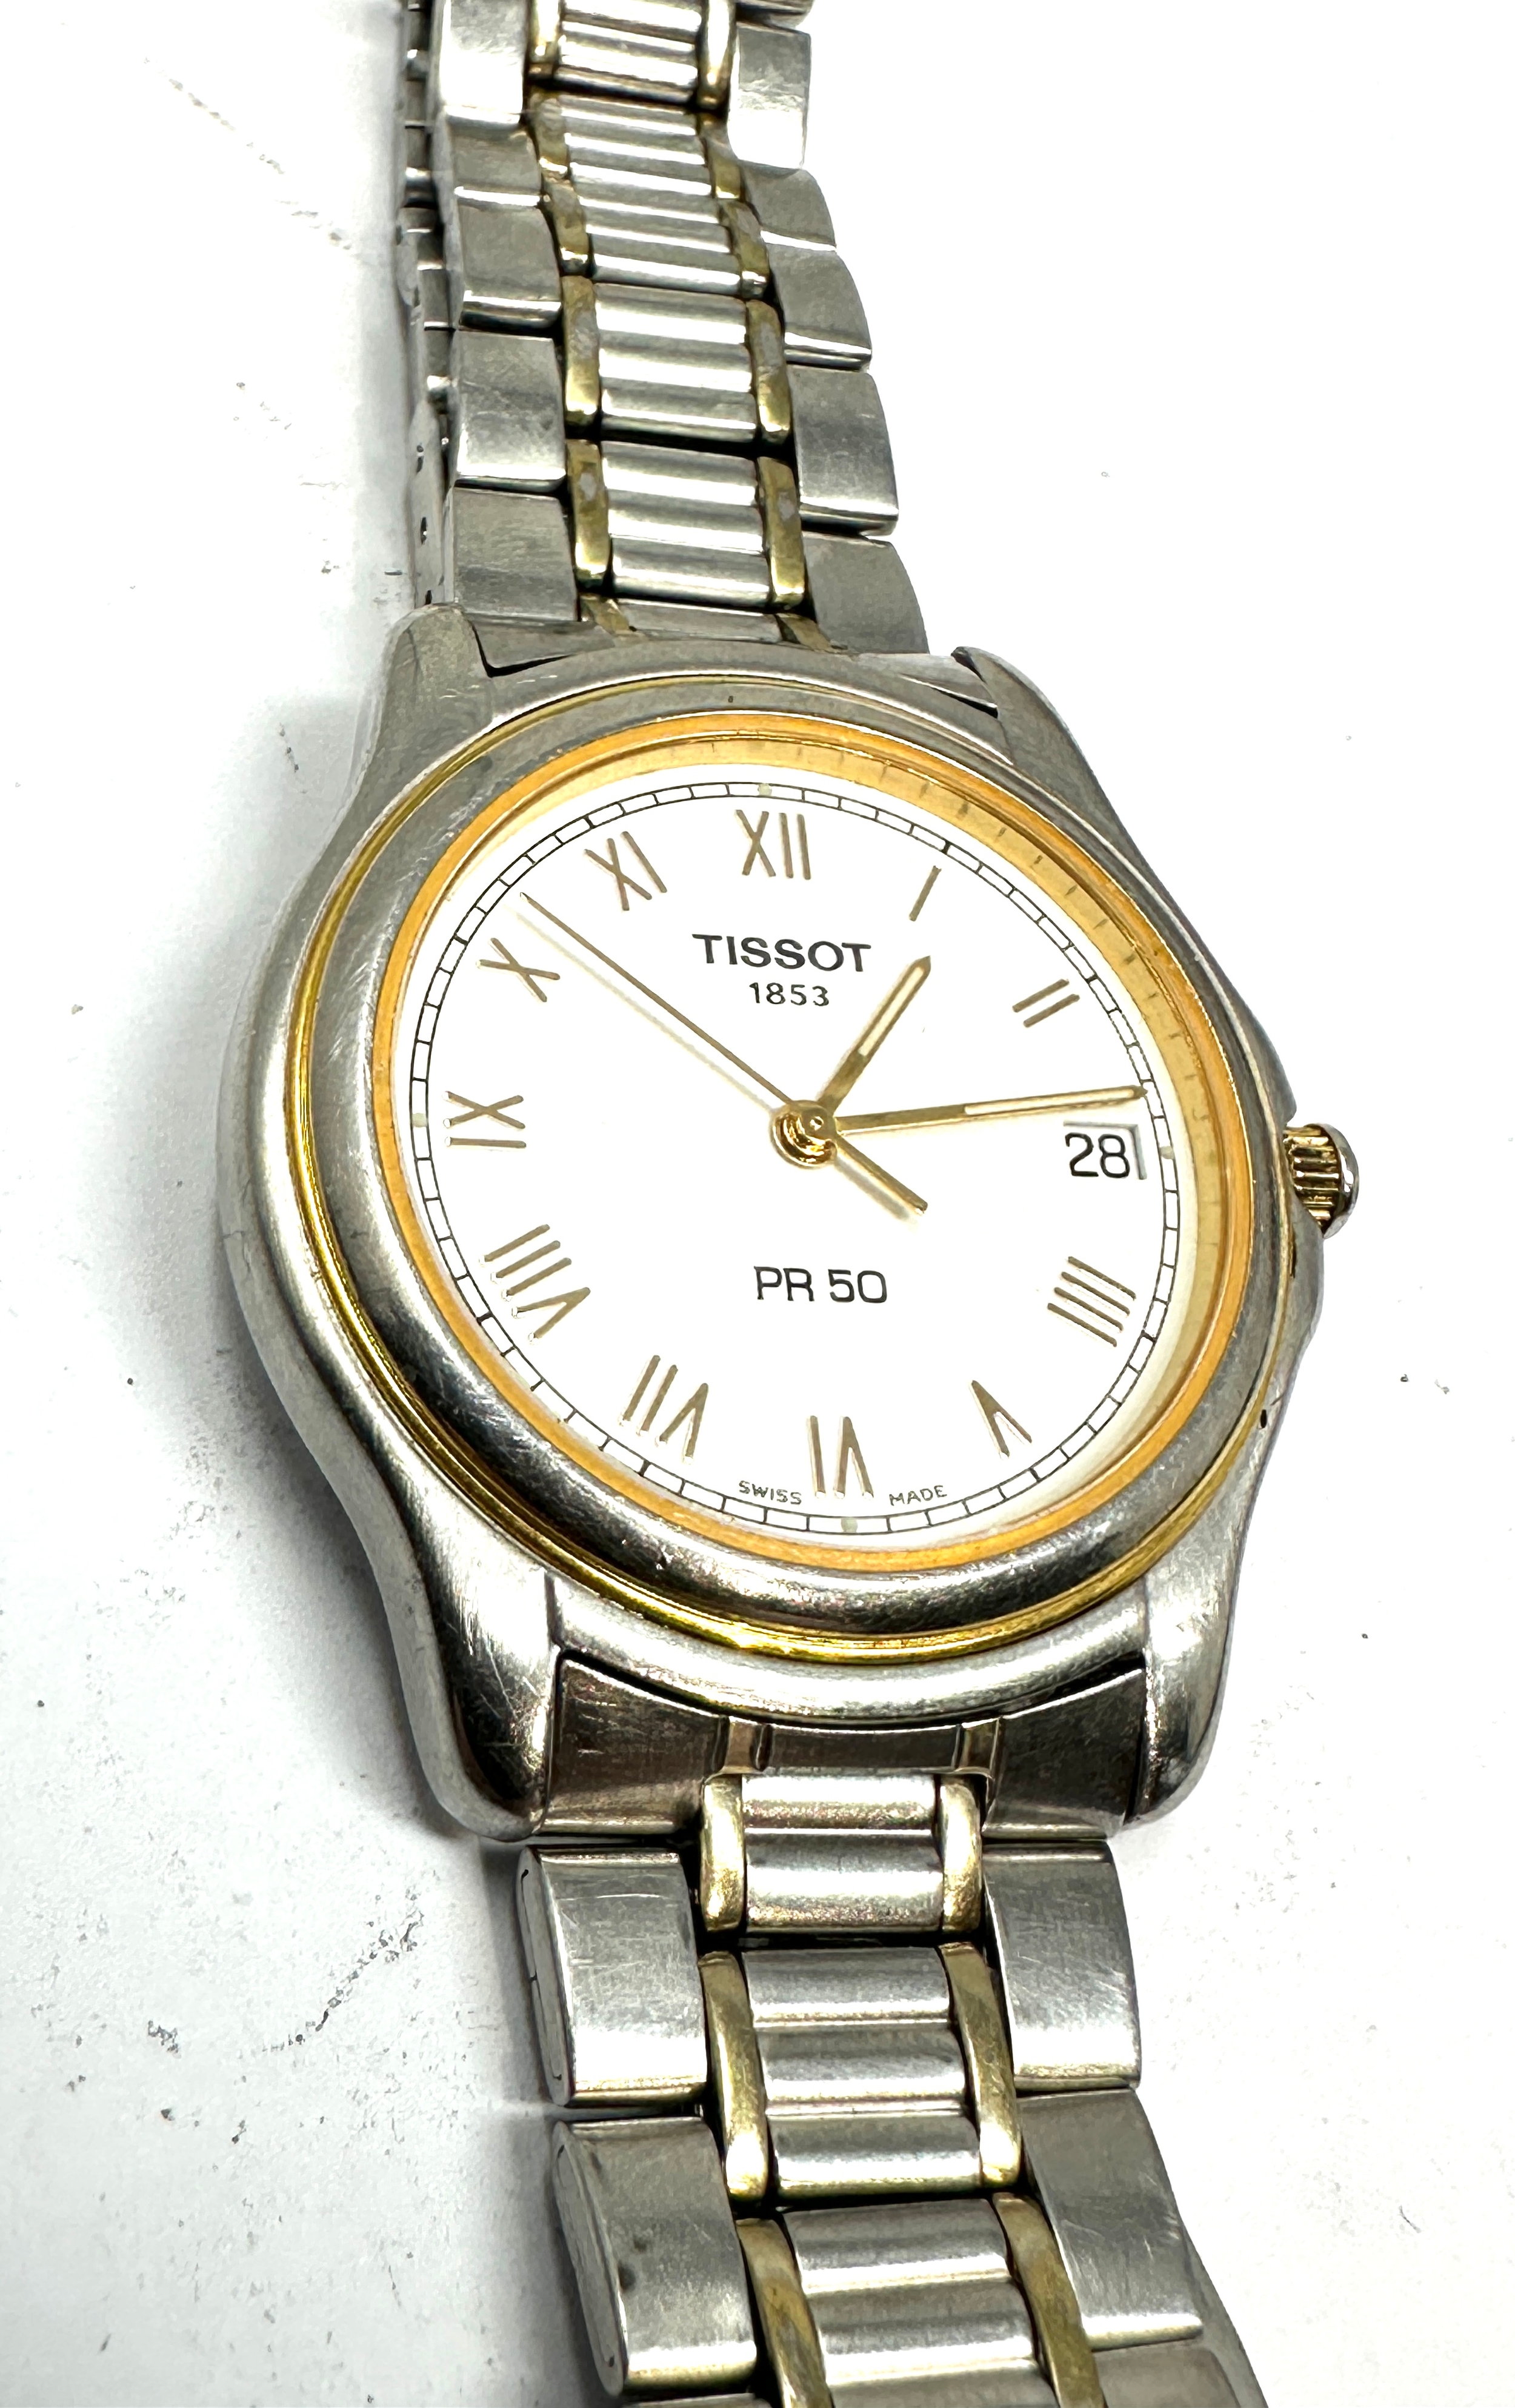 Gents Tissot 1853 pr50 date quartz wristwatch the watch is ticking - Bild 2 aus 5